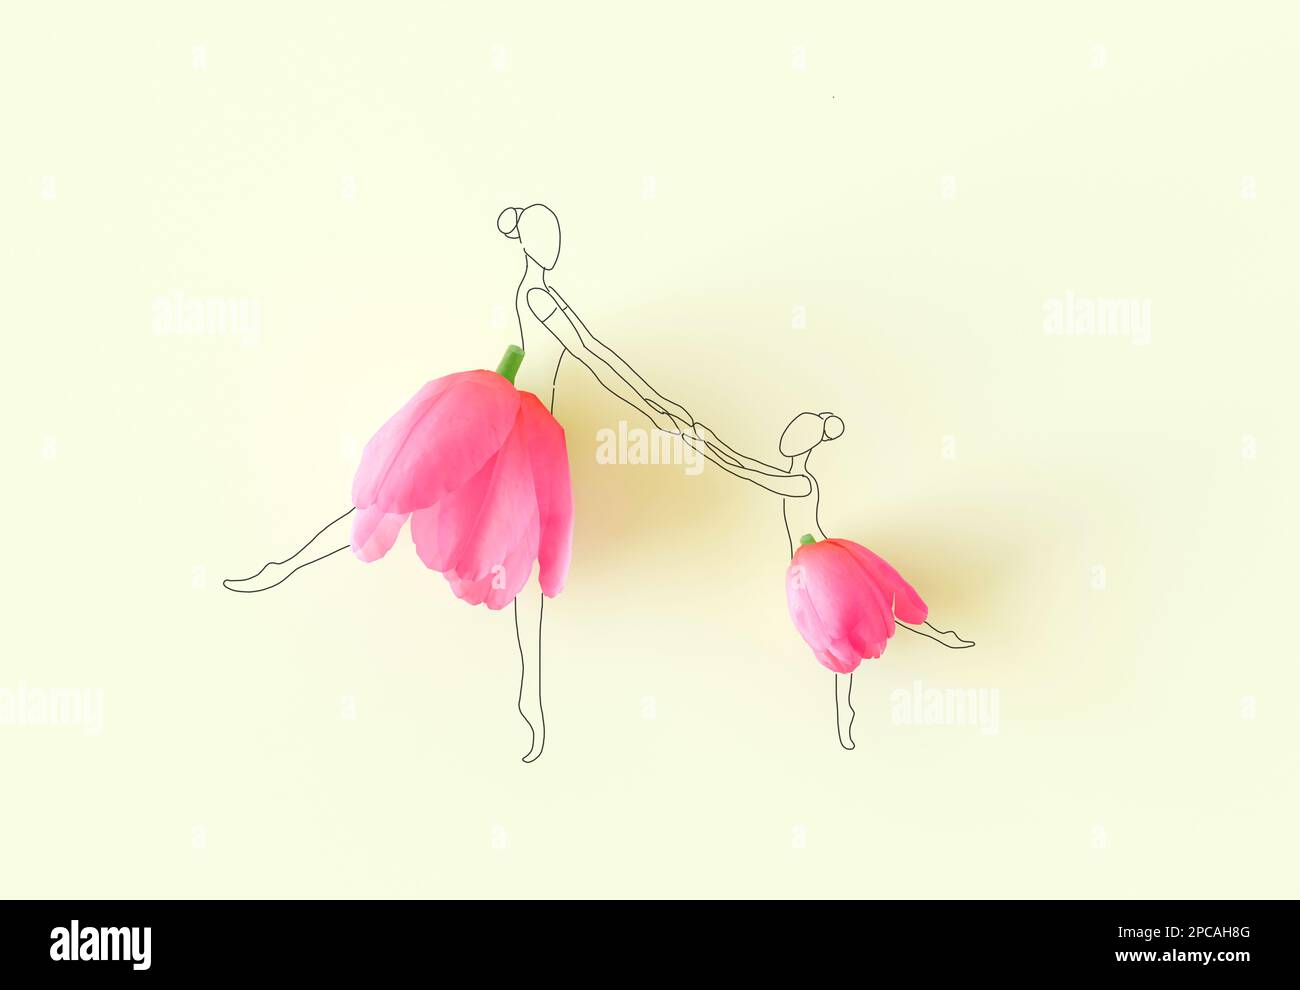 Balletttanz-Traum in Zeichnung, Blumenkleid. Tapete mit kleinen Mädchen und Mutter, Tanz isoliert auf gelbem Hintergrund, Bleistiftskizze. Stockfoto